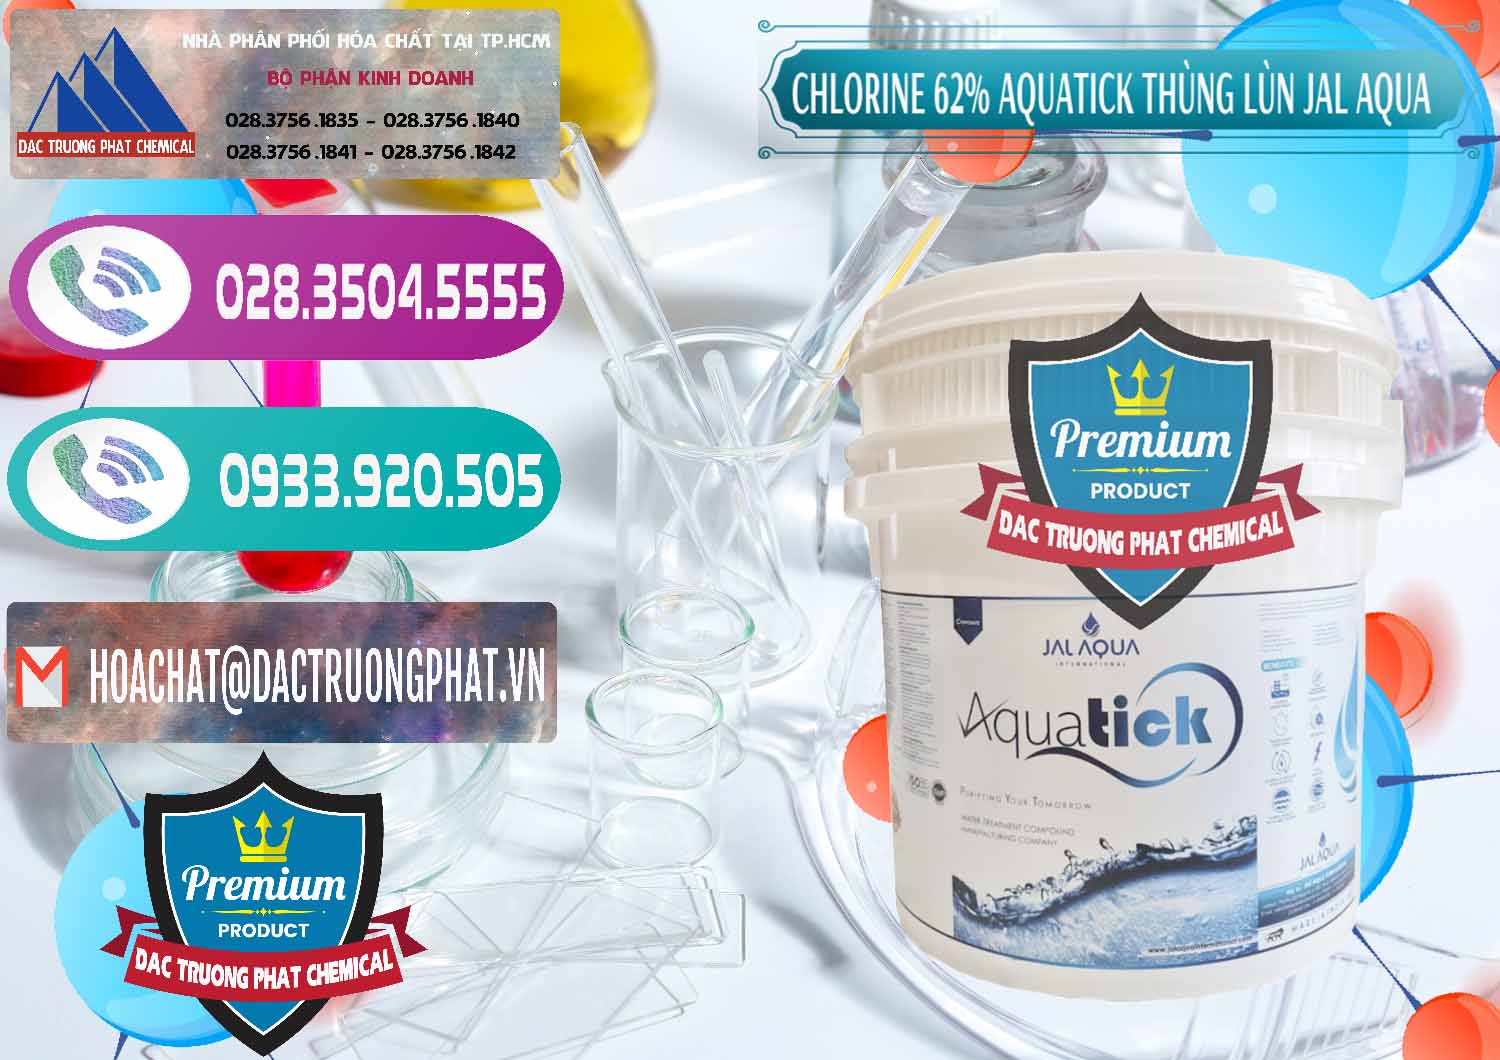 Cty chuyên cung cấp ( bán ) Chlorine – Clorin 62% Aquatick Thùng Lùn Jal Aqua Ấn Độ India - 0238 - Cung cấp và phân phối hóa chất tại TP.HCM - hoachatxulynuoc.com